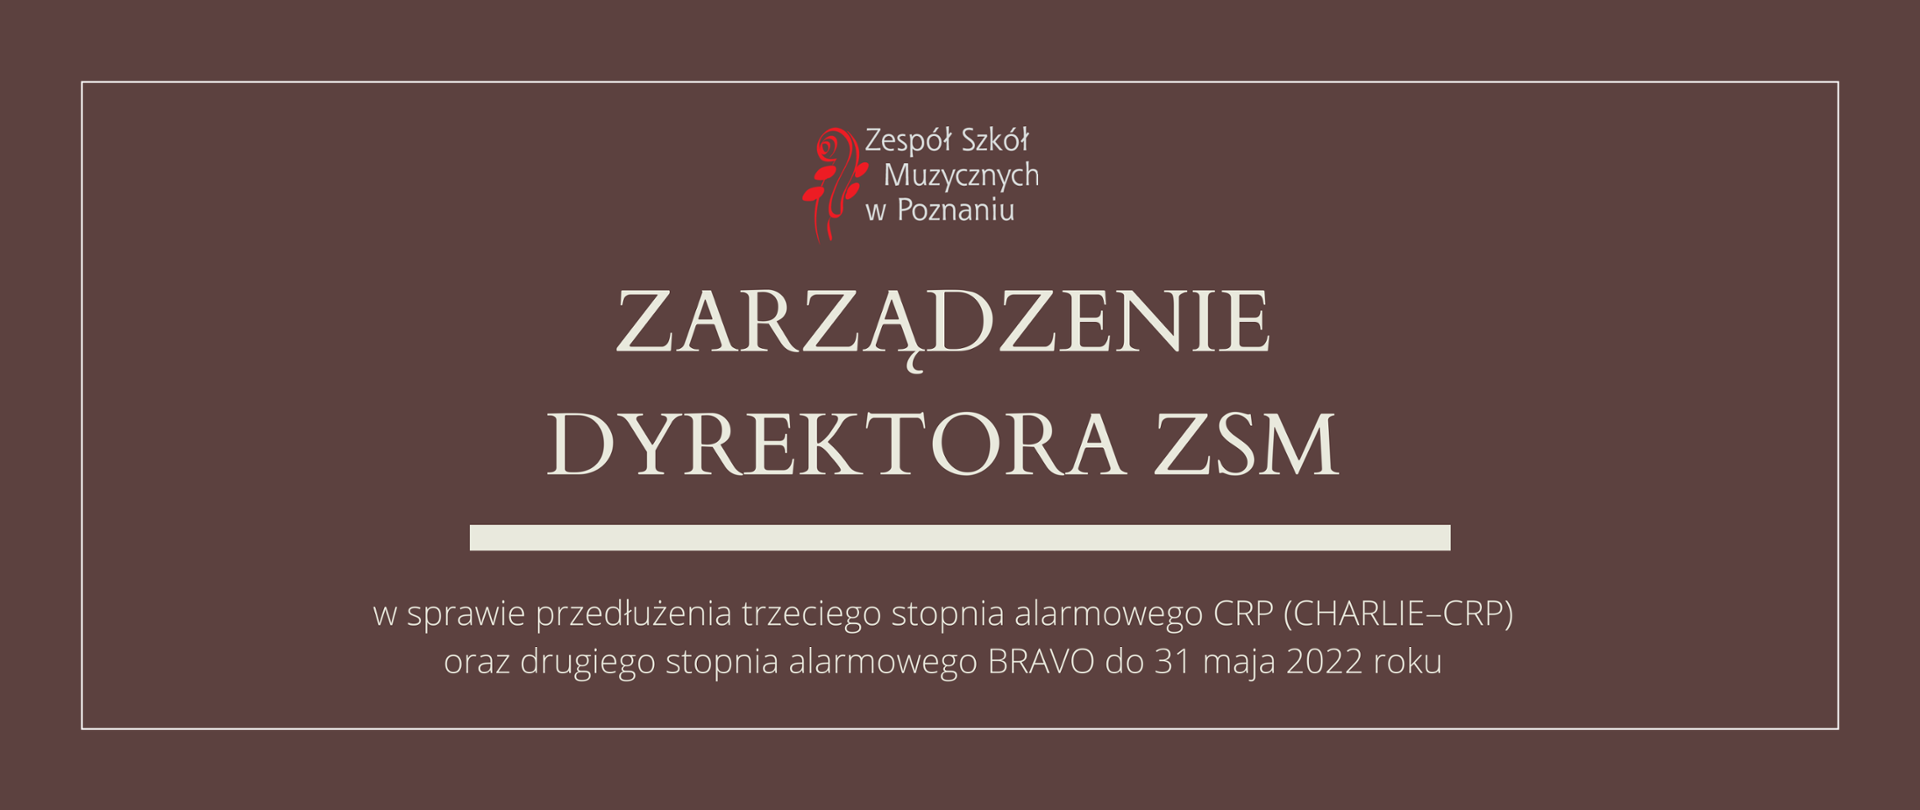 Brązowa grafika z logo ZSM i tekstem /"ZARZĄDZENIE DYREKTORA ZSM"/ poniżej biała gruba linia, niżej tekst /"w sprawie przedłużenia trzeciego stopnia alarmowego CRP (CHARLIE–CRP) oraz drugiego stopnia alarmowego BRAVO do 31 maja 2022"/